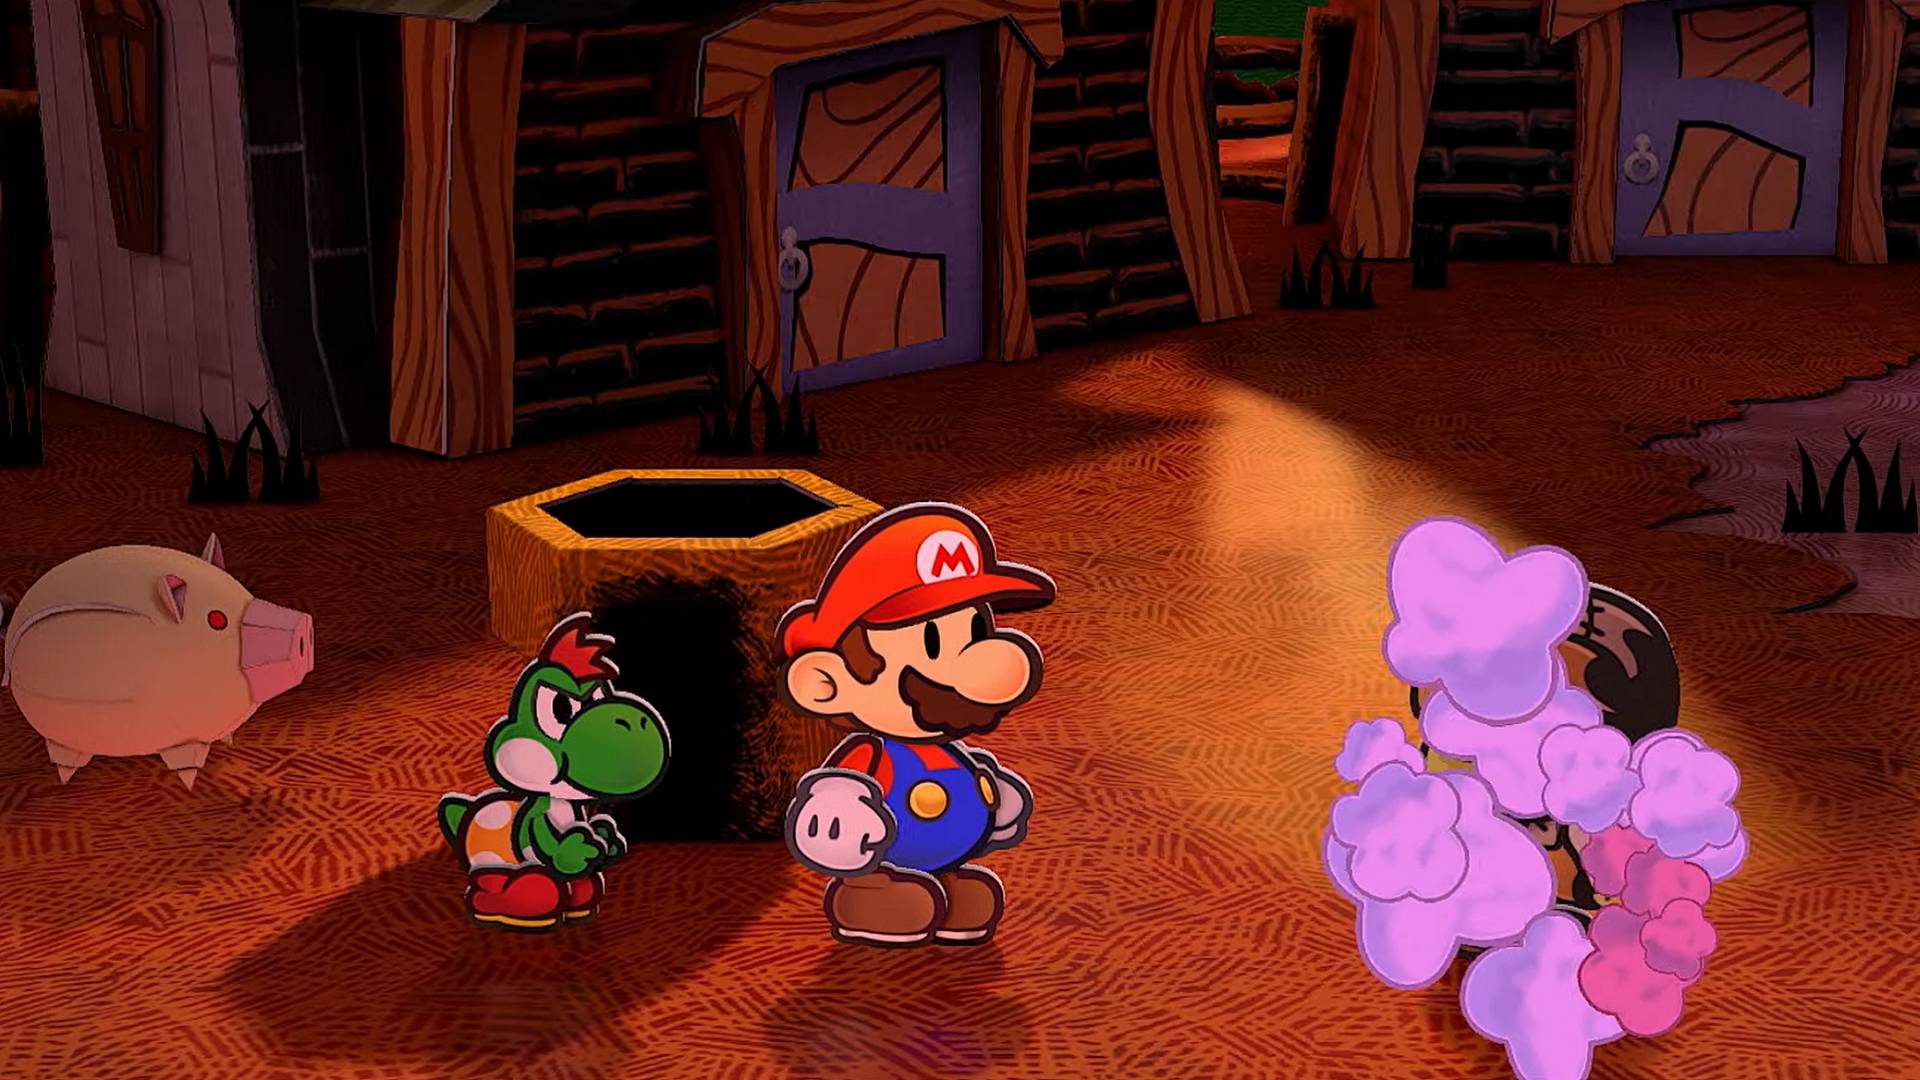 Fan favorite Paper Mario The ThousandYear Door unfolds on Switch